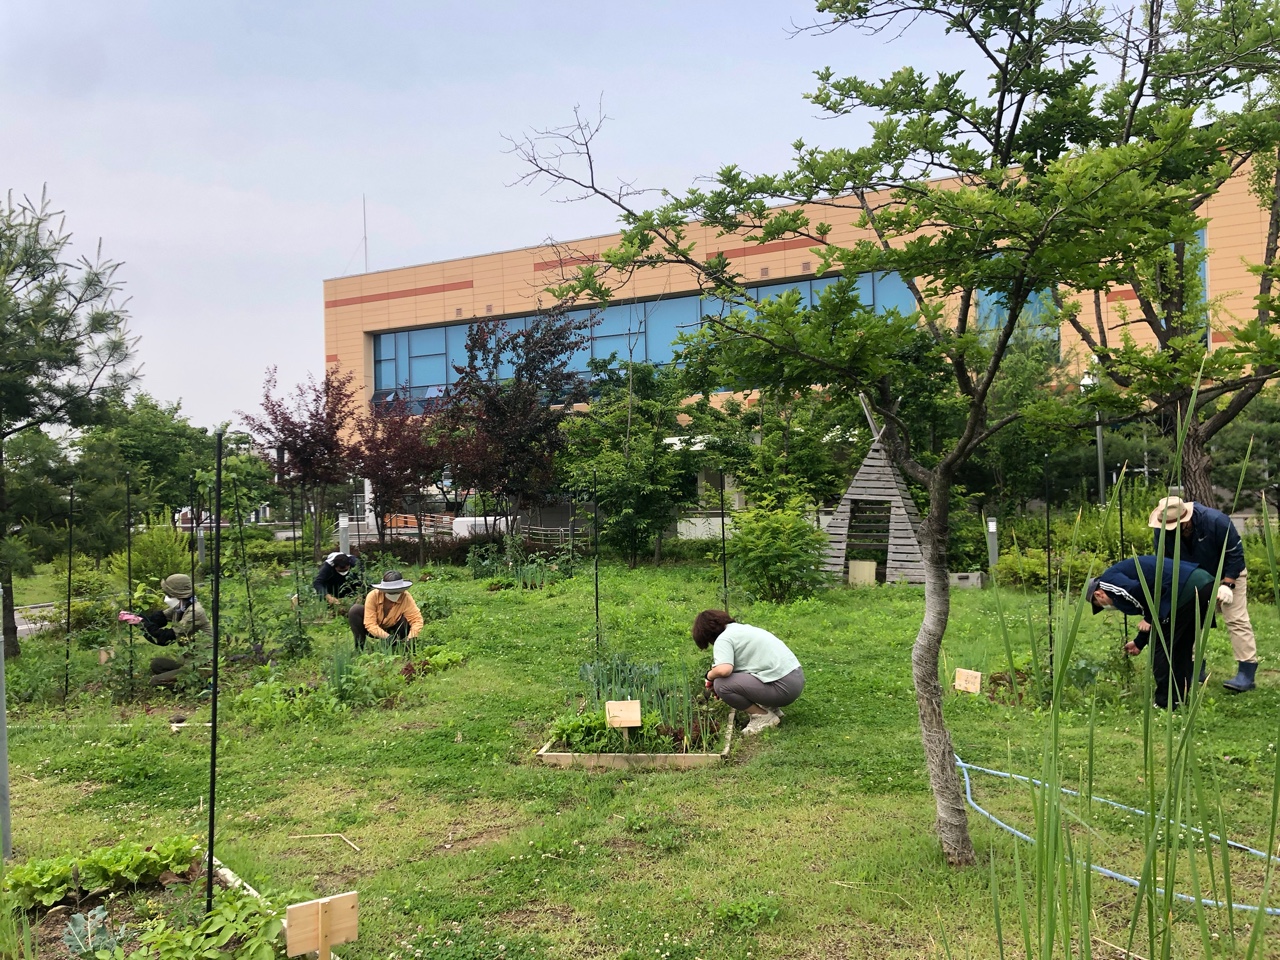 모두의숲 도시농부워크숍 : 텃밭러의 봄과 여름 2021 1학기(21.6.1-6.15)